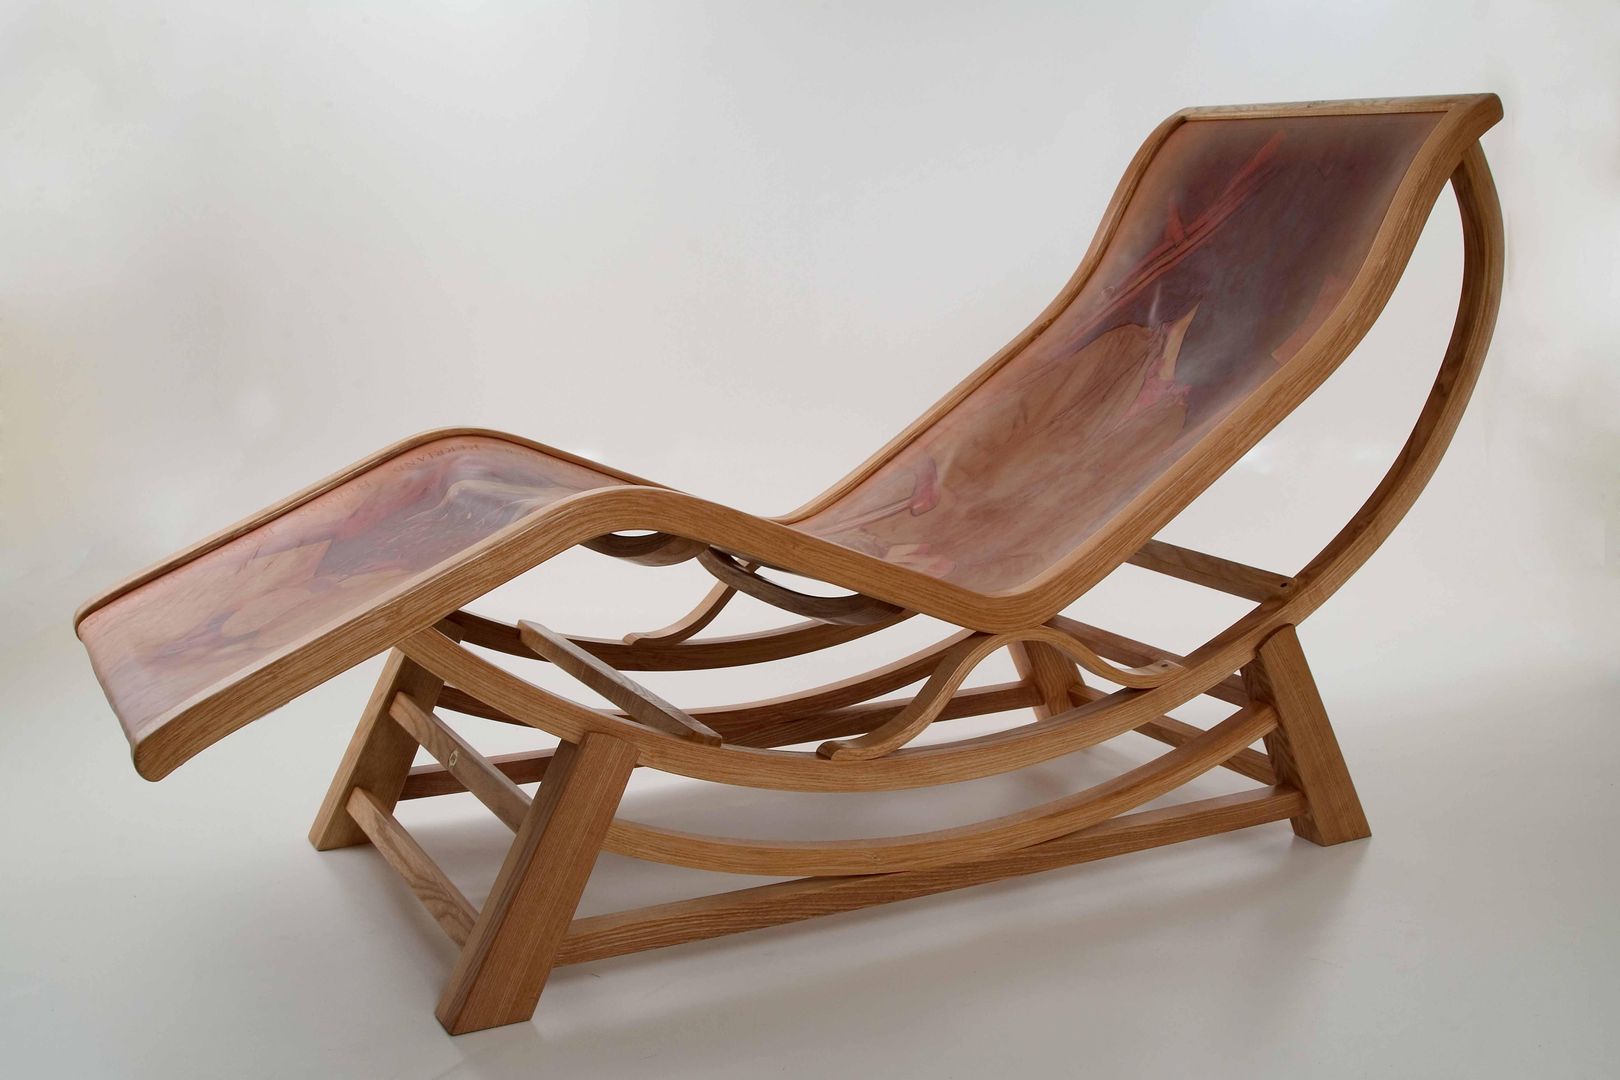 Corbusier-inspired chaise longue by Bruce Burman homify Cuartos de estilo clásico Sofas y divanes